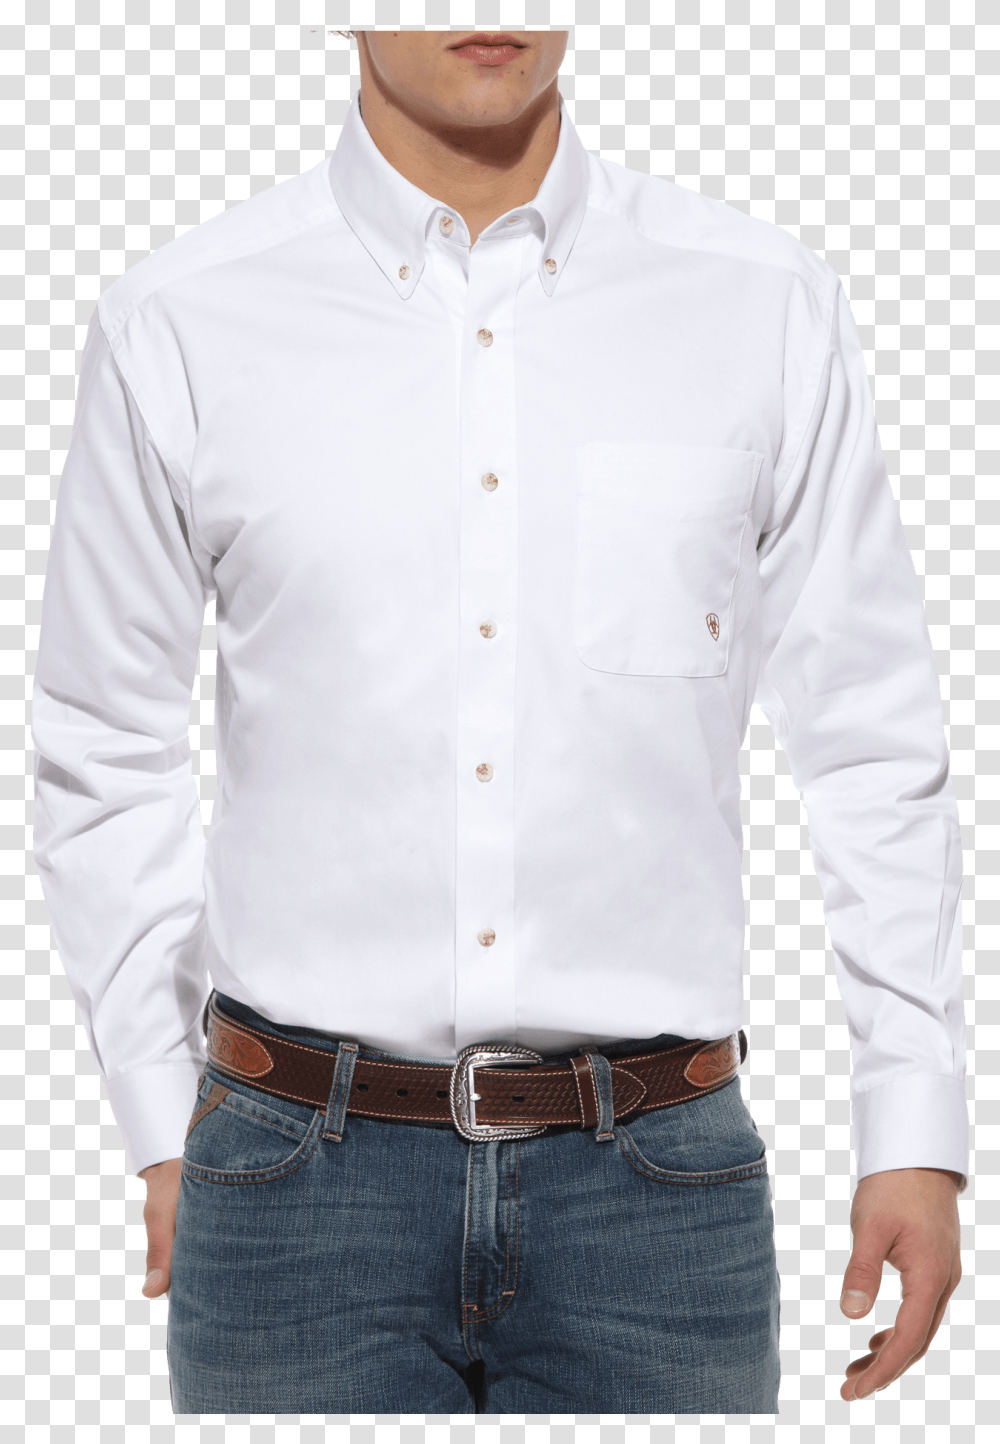 White Button Up Shirt Dress Shirt, Apparel, Belt, Accessories Transparent Png